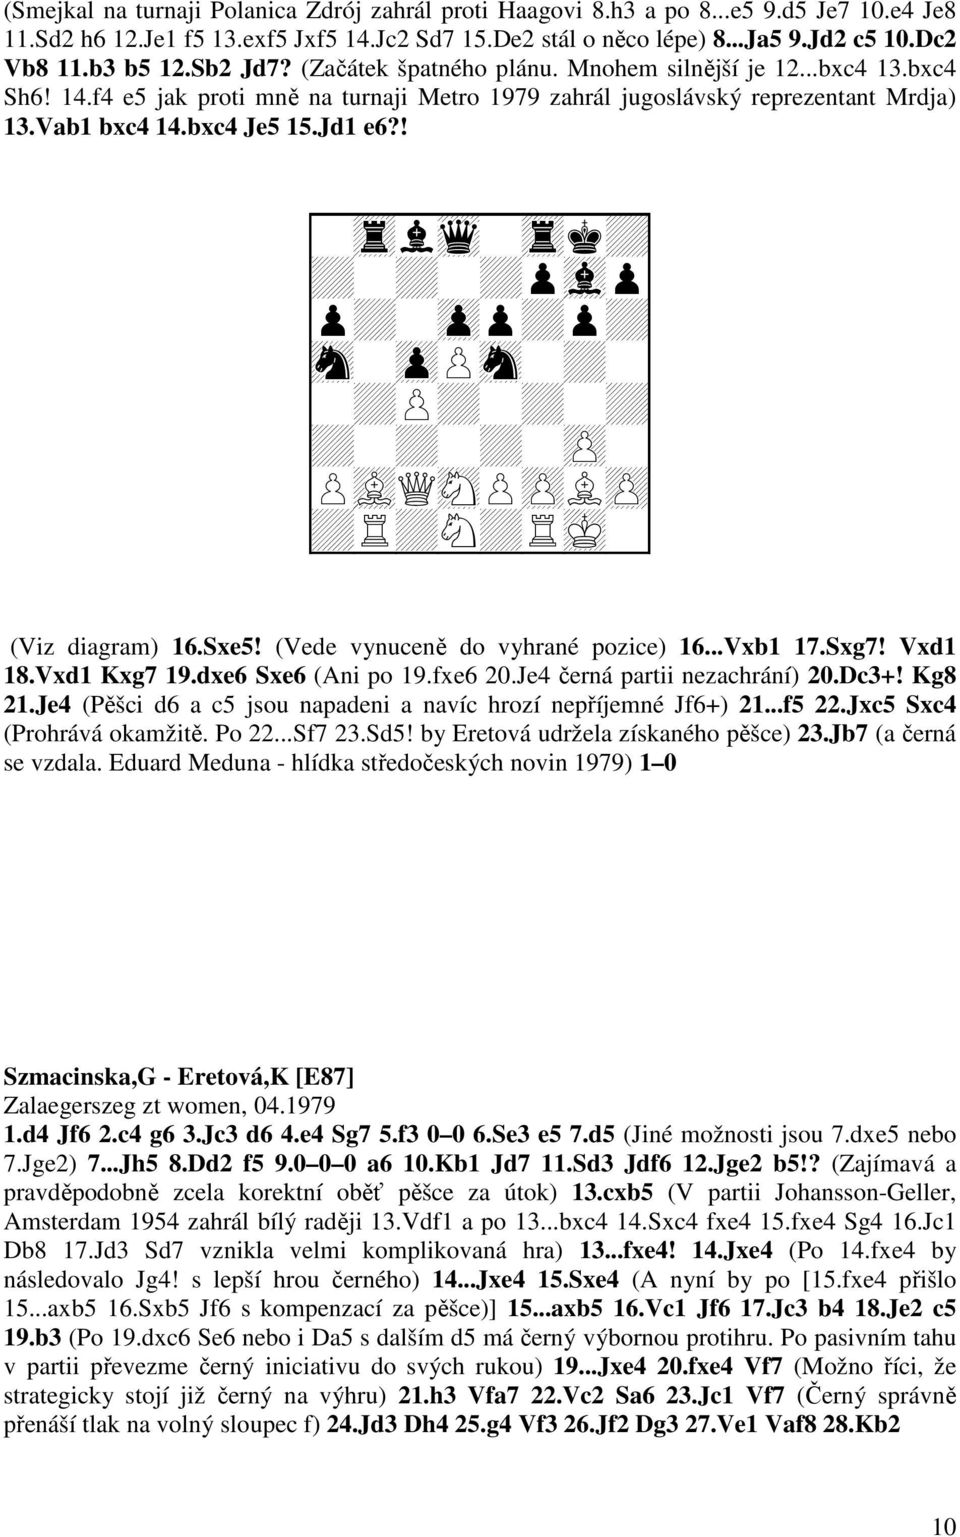 Jd1 e6?! + + + + + + + + + + + + + + + Q + + + (Viz diagram) 16.Sxe5! (Vede vynuceně do vyhrané pozice) 16...Vxb1 17.Sxg7! Vxd1 18.Vxd1 Kxg7 19.dxe6 Sxe6 (Ani po 19.fxe6 20.